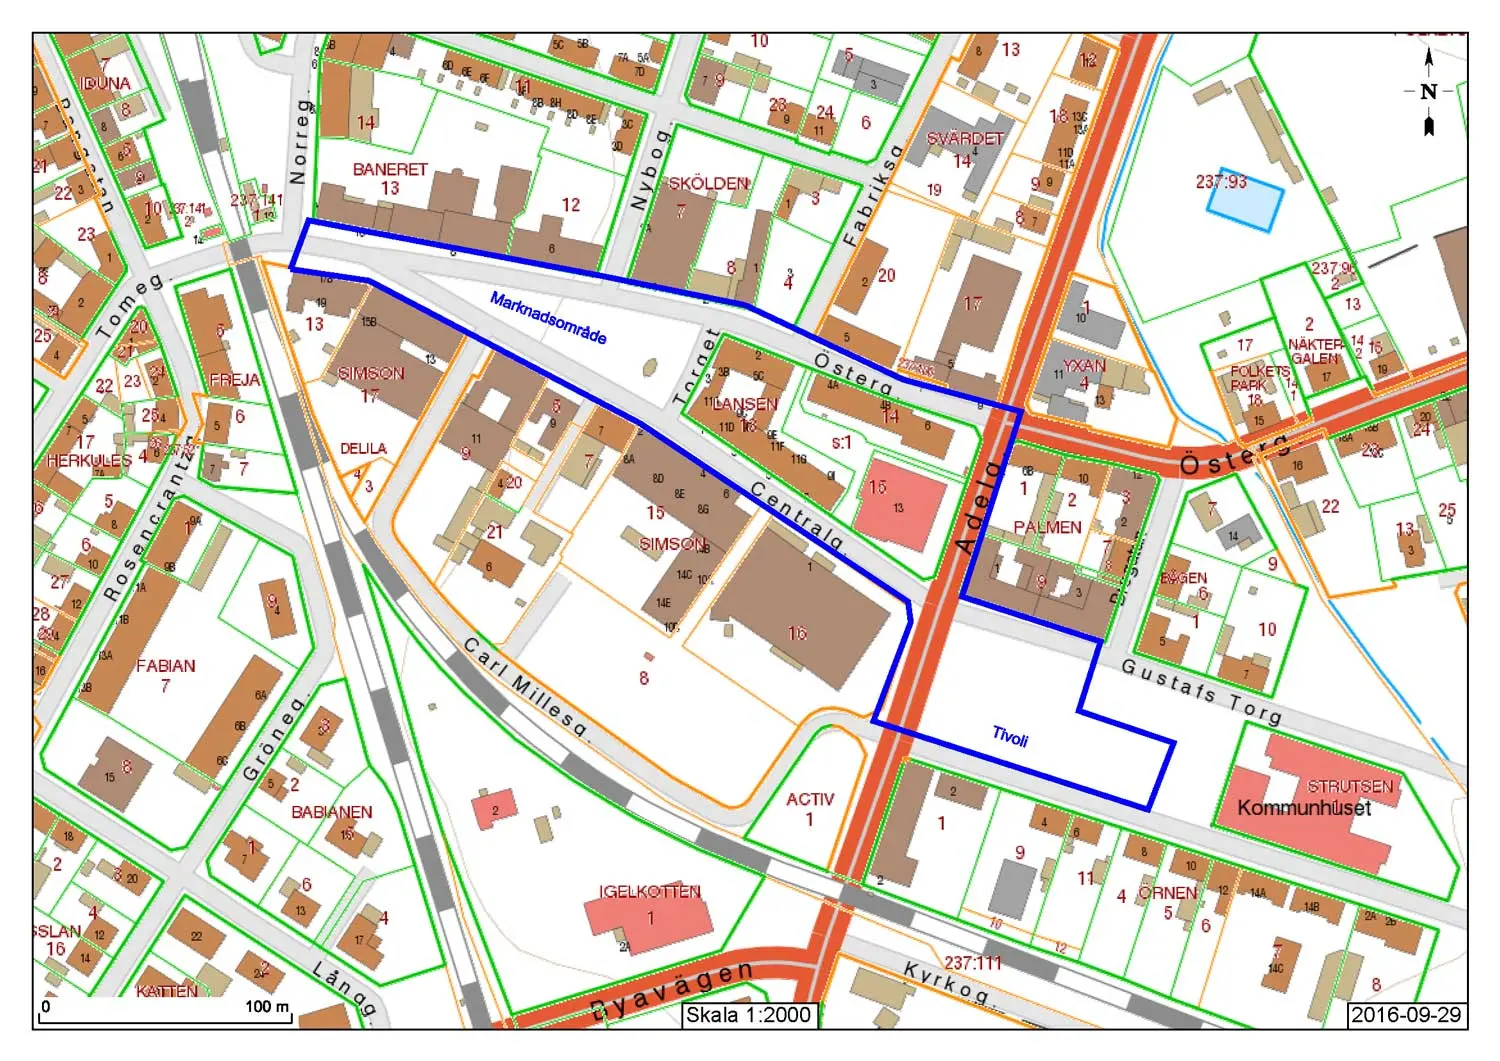 Blå markering längs Östergatan, Centralgatan och delar av Gustavs torg.